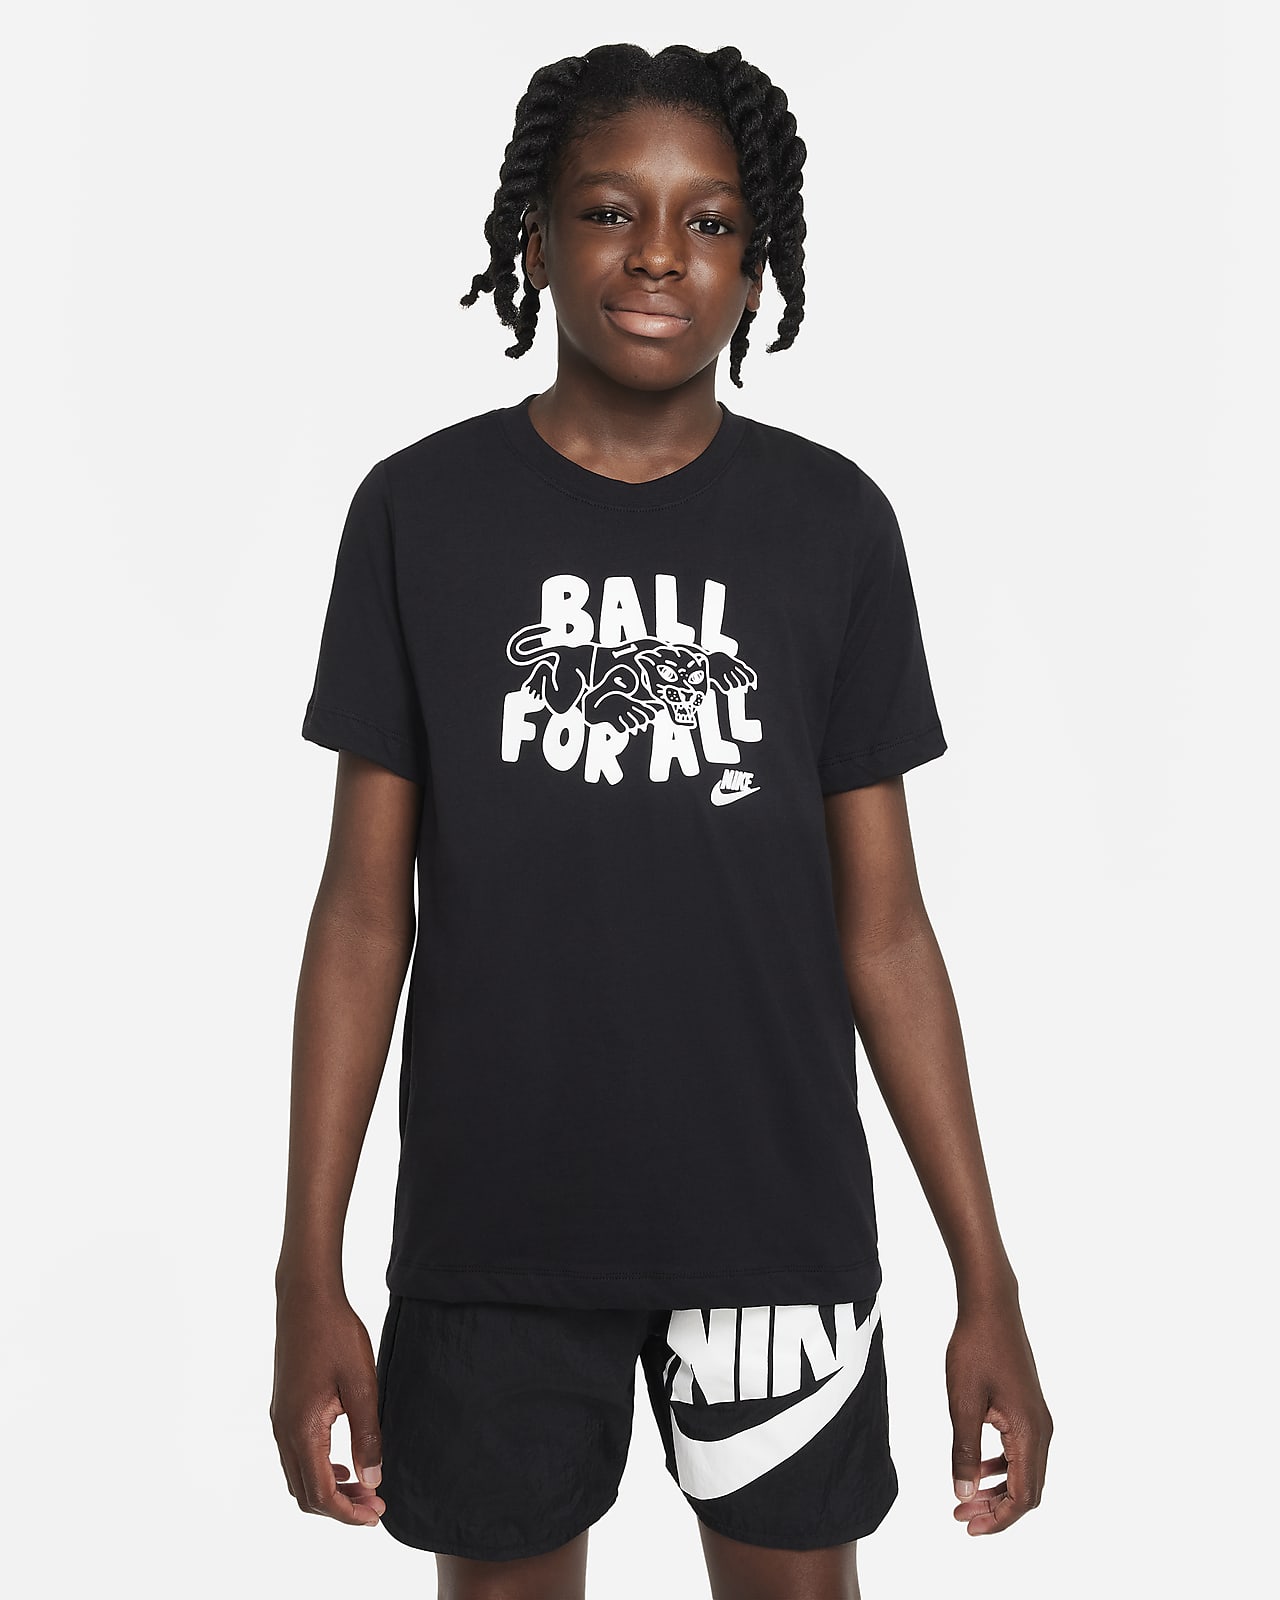 ナイキ スポーツウェア カルチャー オブ バスケットボール ジュニア (ボーイズ) Tシャツ